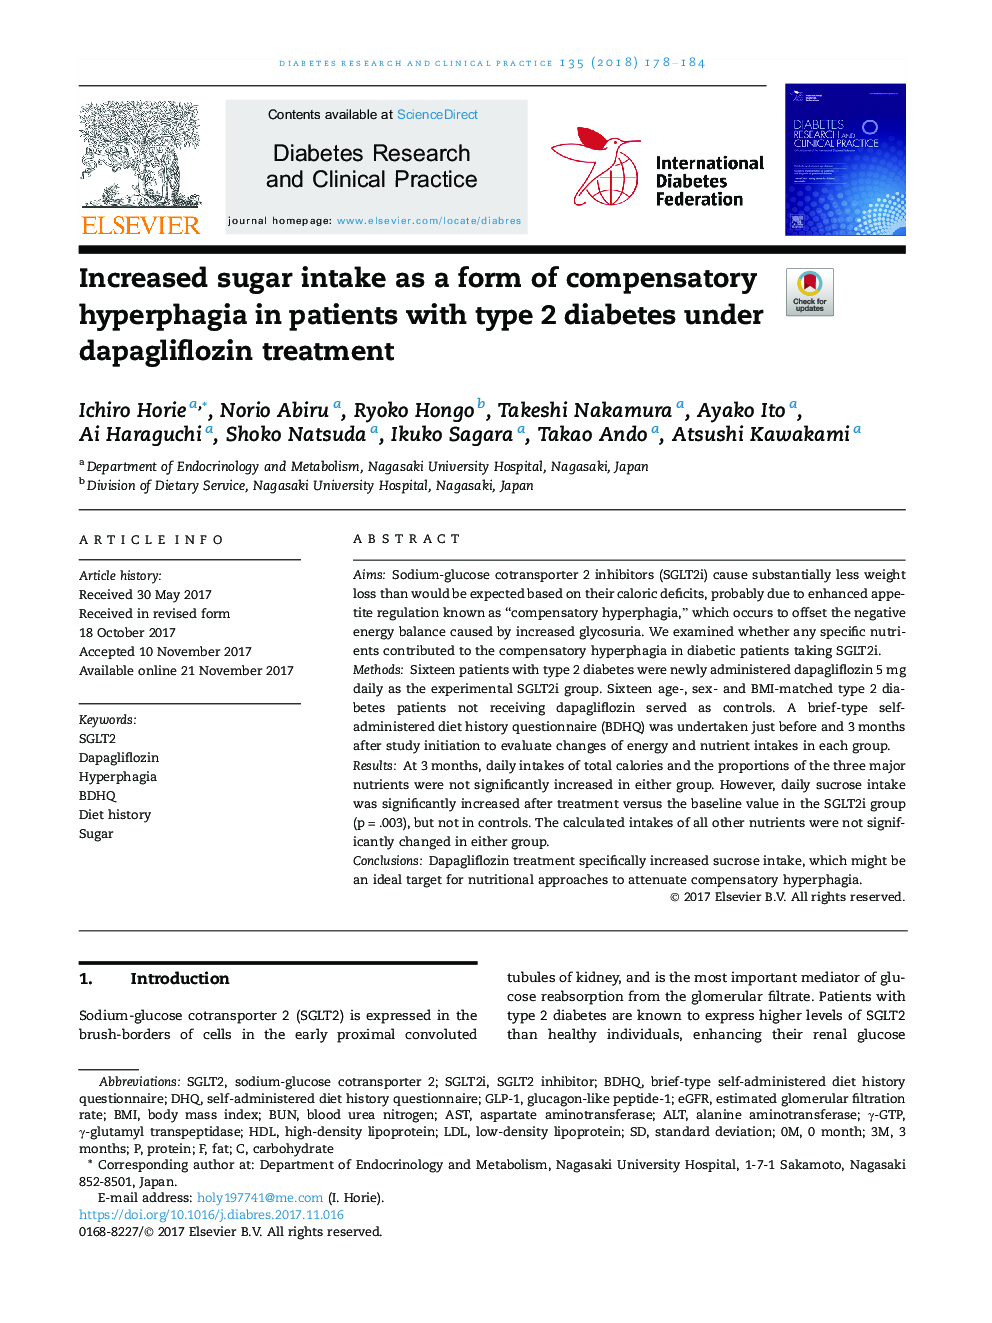 افزایش مصرف قند به عنوان یک فرم هیپرپالژی جبرانی در بیماران مبتلا به دیابت نوع 2 تحت درمان داپاگلیفلوسین 